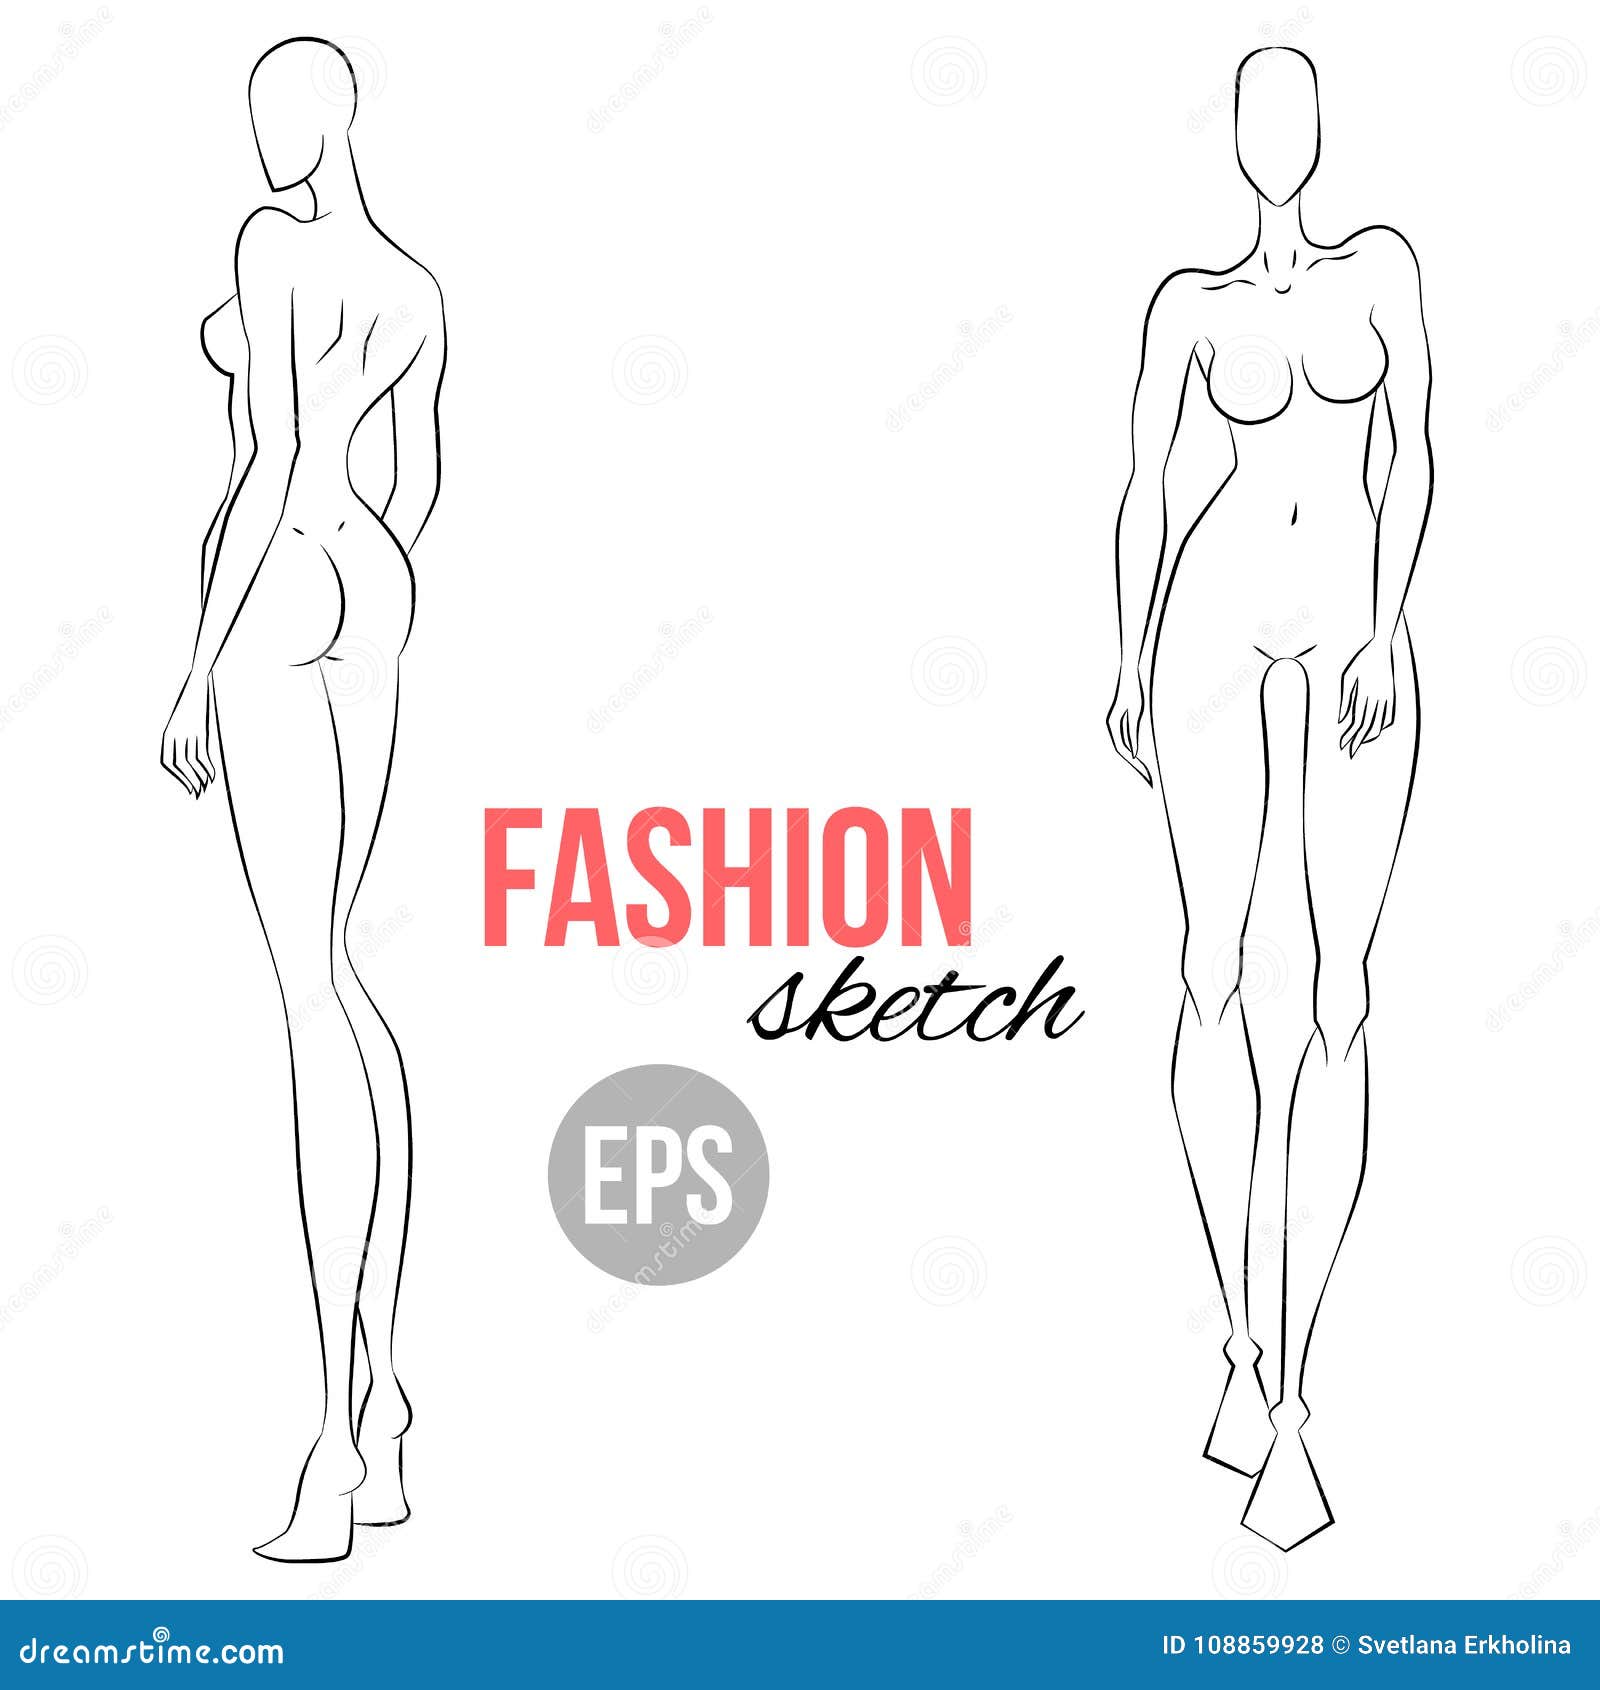 3 Tricks to Create New Croquis Poses  amiko simonetti  Fashion  illustration tutorial Fashion illustration template Fashion drawing  tutorial